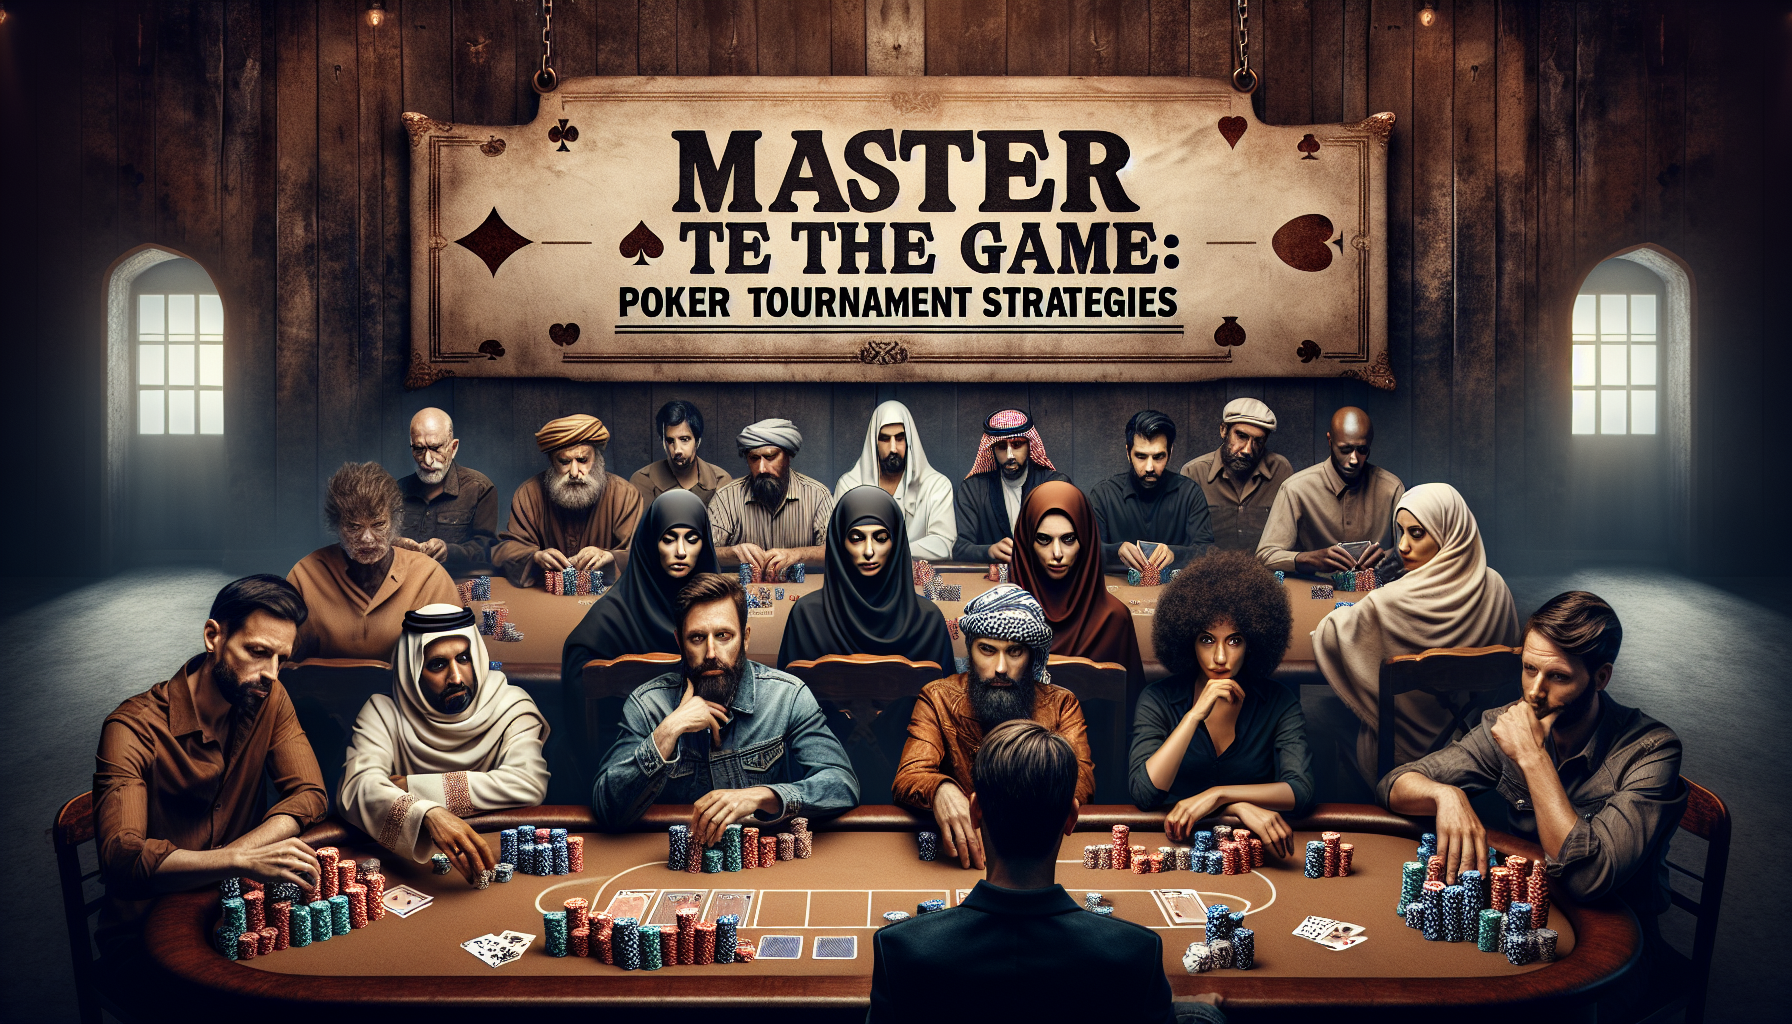 découvrez les meilleures stratégies pour exceller dans les tournois de poker. apprenez à maîtriser les techniques avancées et à maximiser vos chances de victoire.